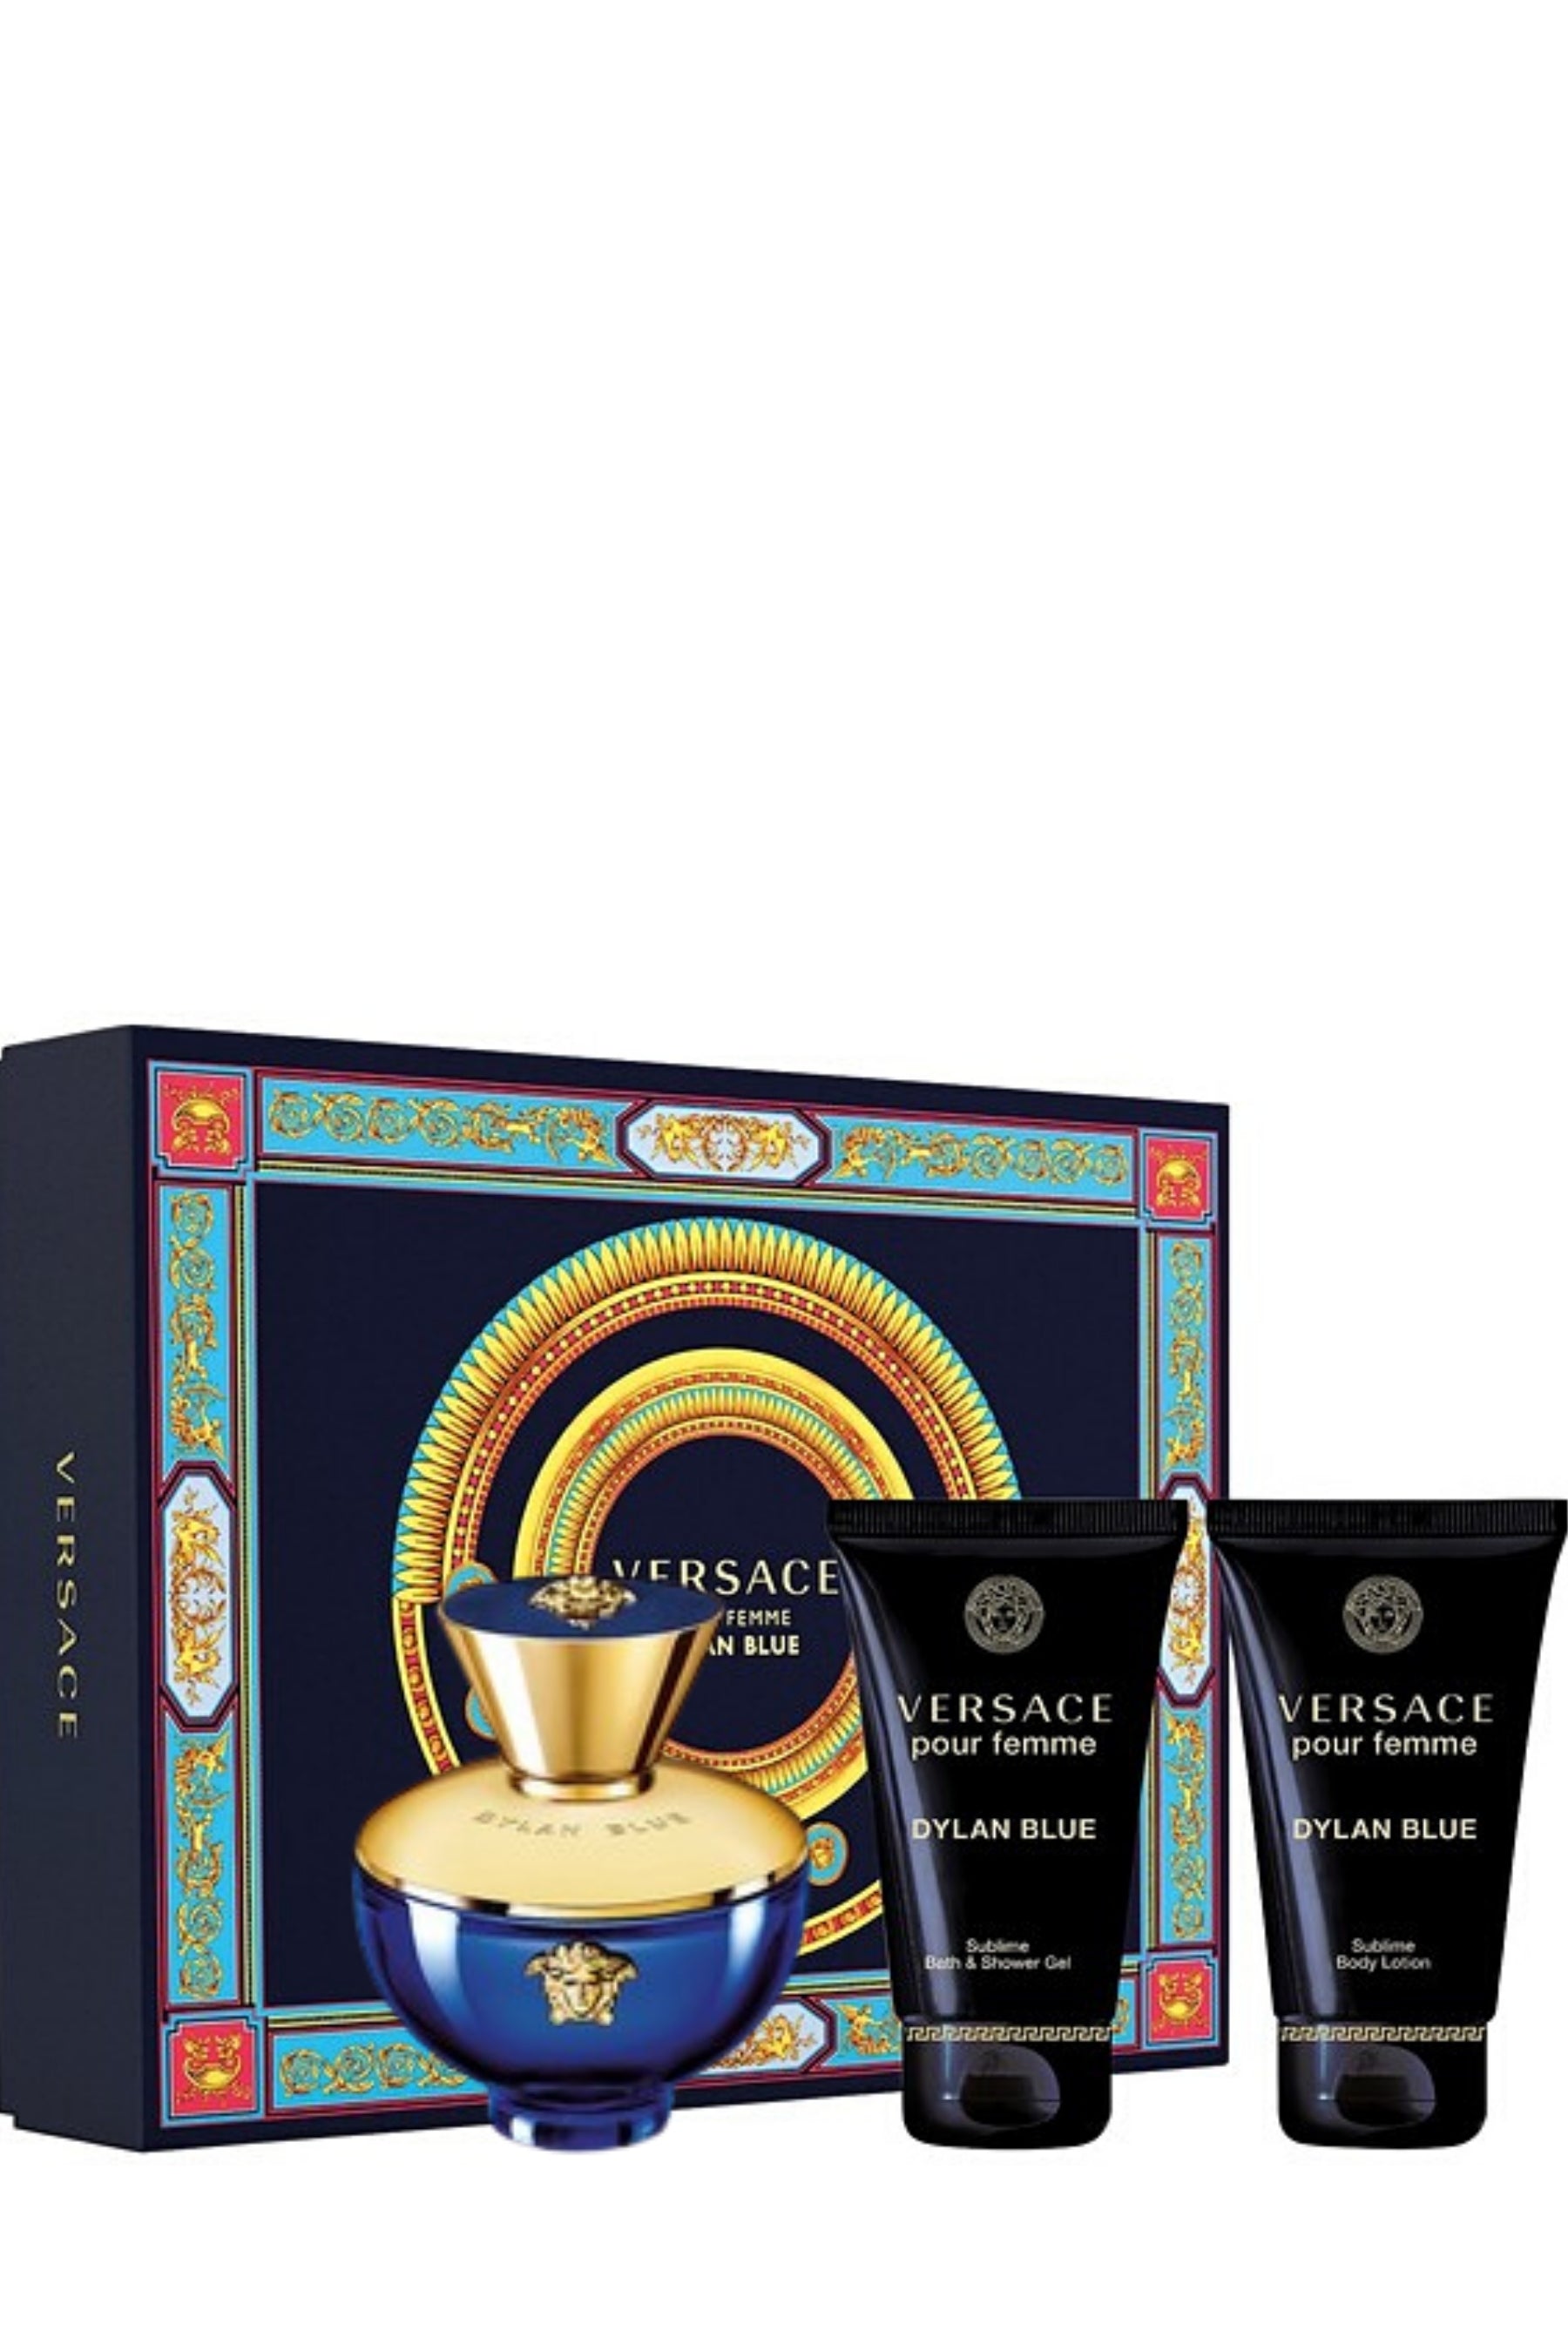 Versace Dylan Blue Eau De Toilette Spray 100ml Set 3 Pieces, Luxury  Perfume - Niche Perfume Shop